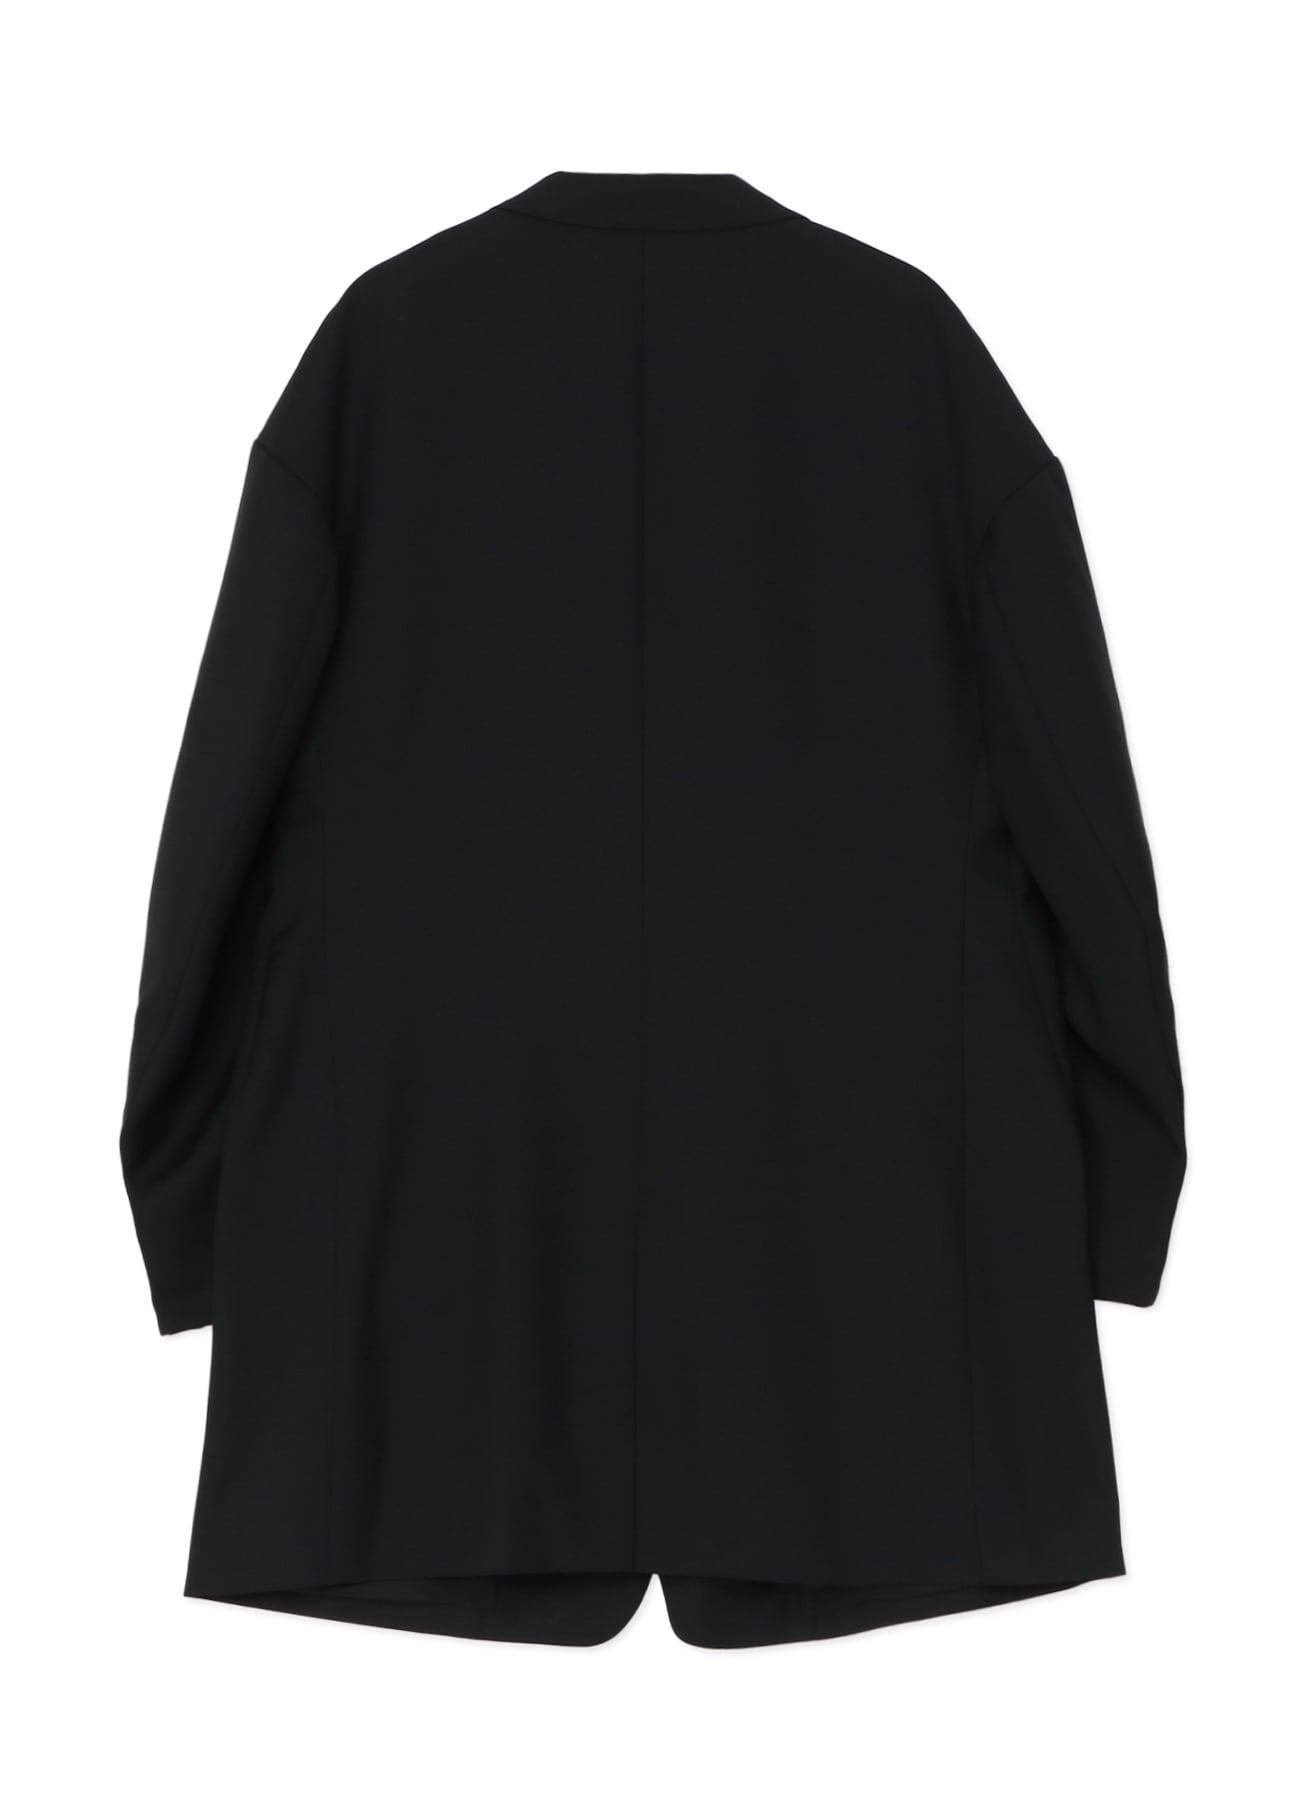 Wool/Polyester Gabardine Oversized Jacket